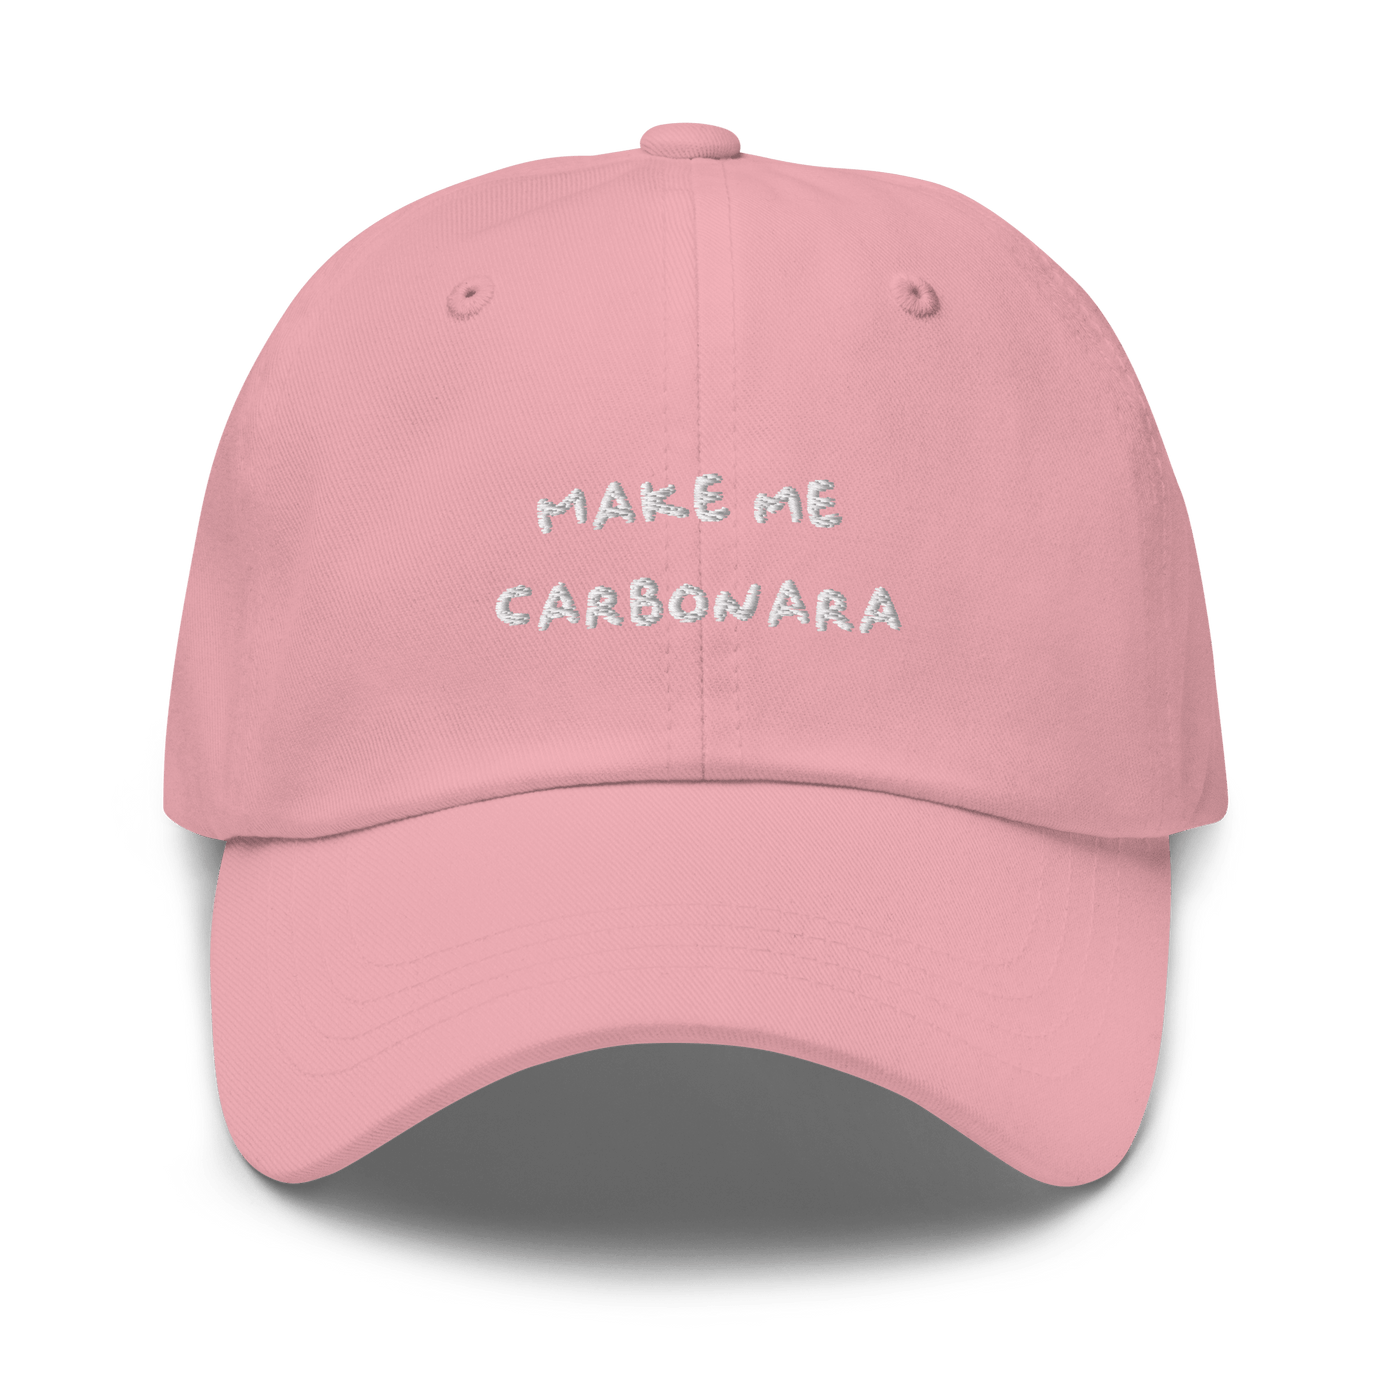 Make me Carbonara Dad hat - Pink - - Just Another Cap Store